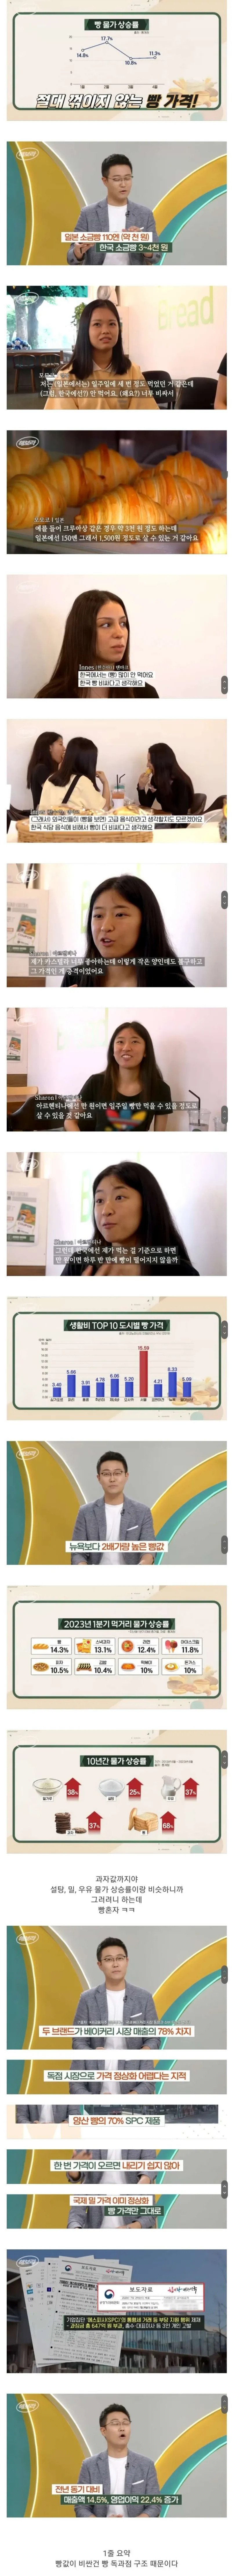 1.webp.ren.jpg KBS에서 분석한 한국 빵값이 엄청나게 비싼 이유